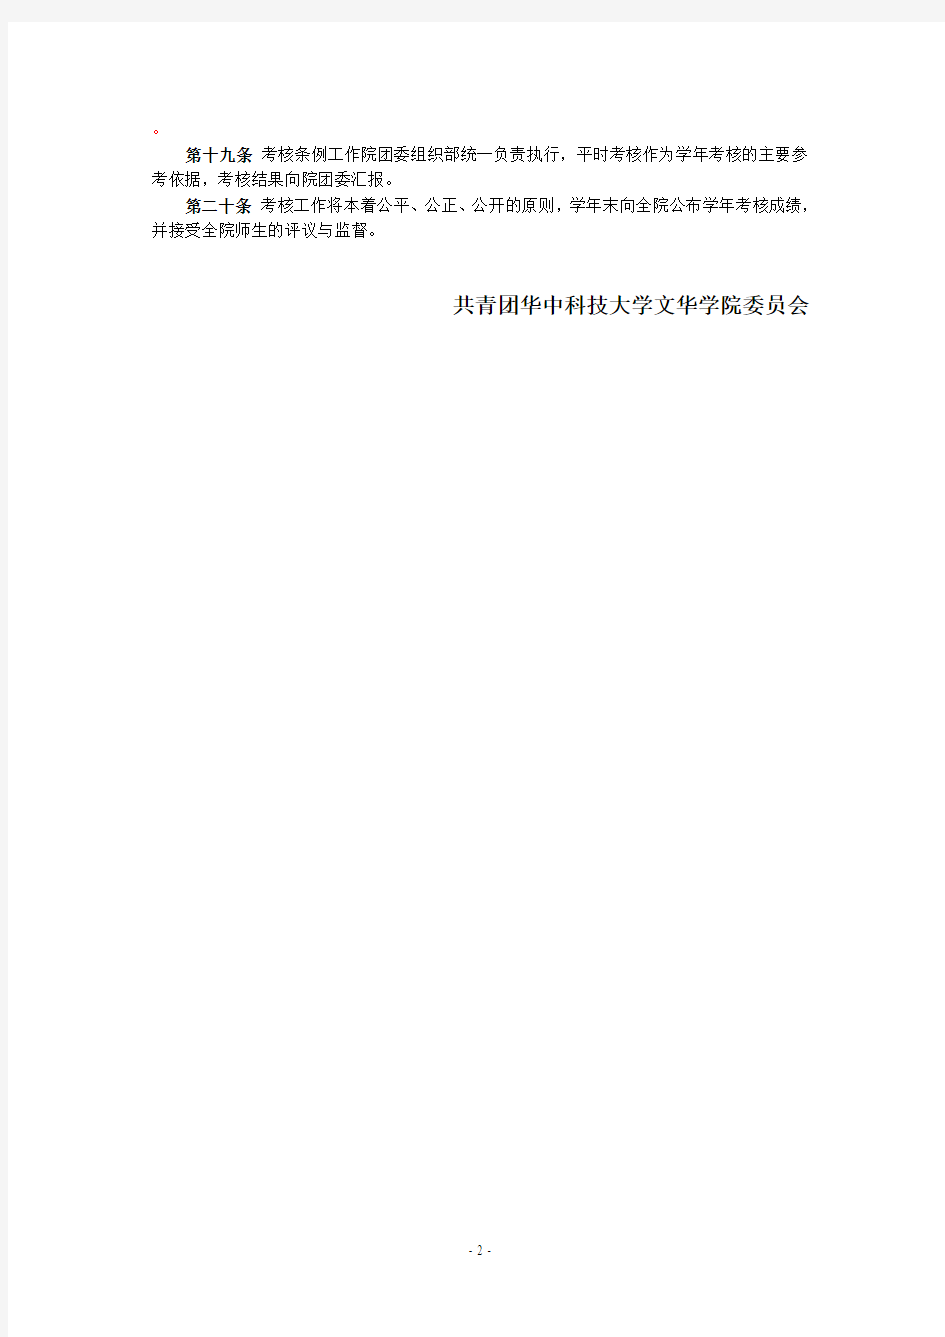 华中科技大学文华学院学生干部考核办法(修订稿)